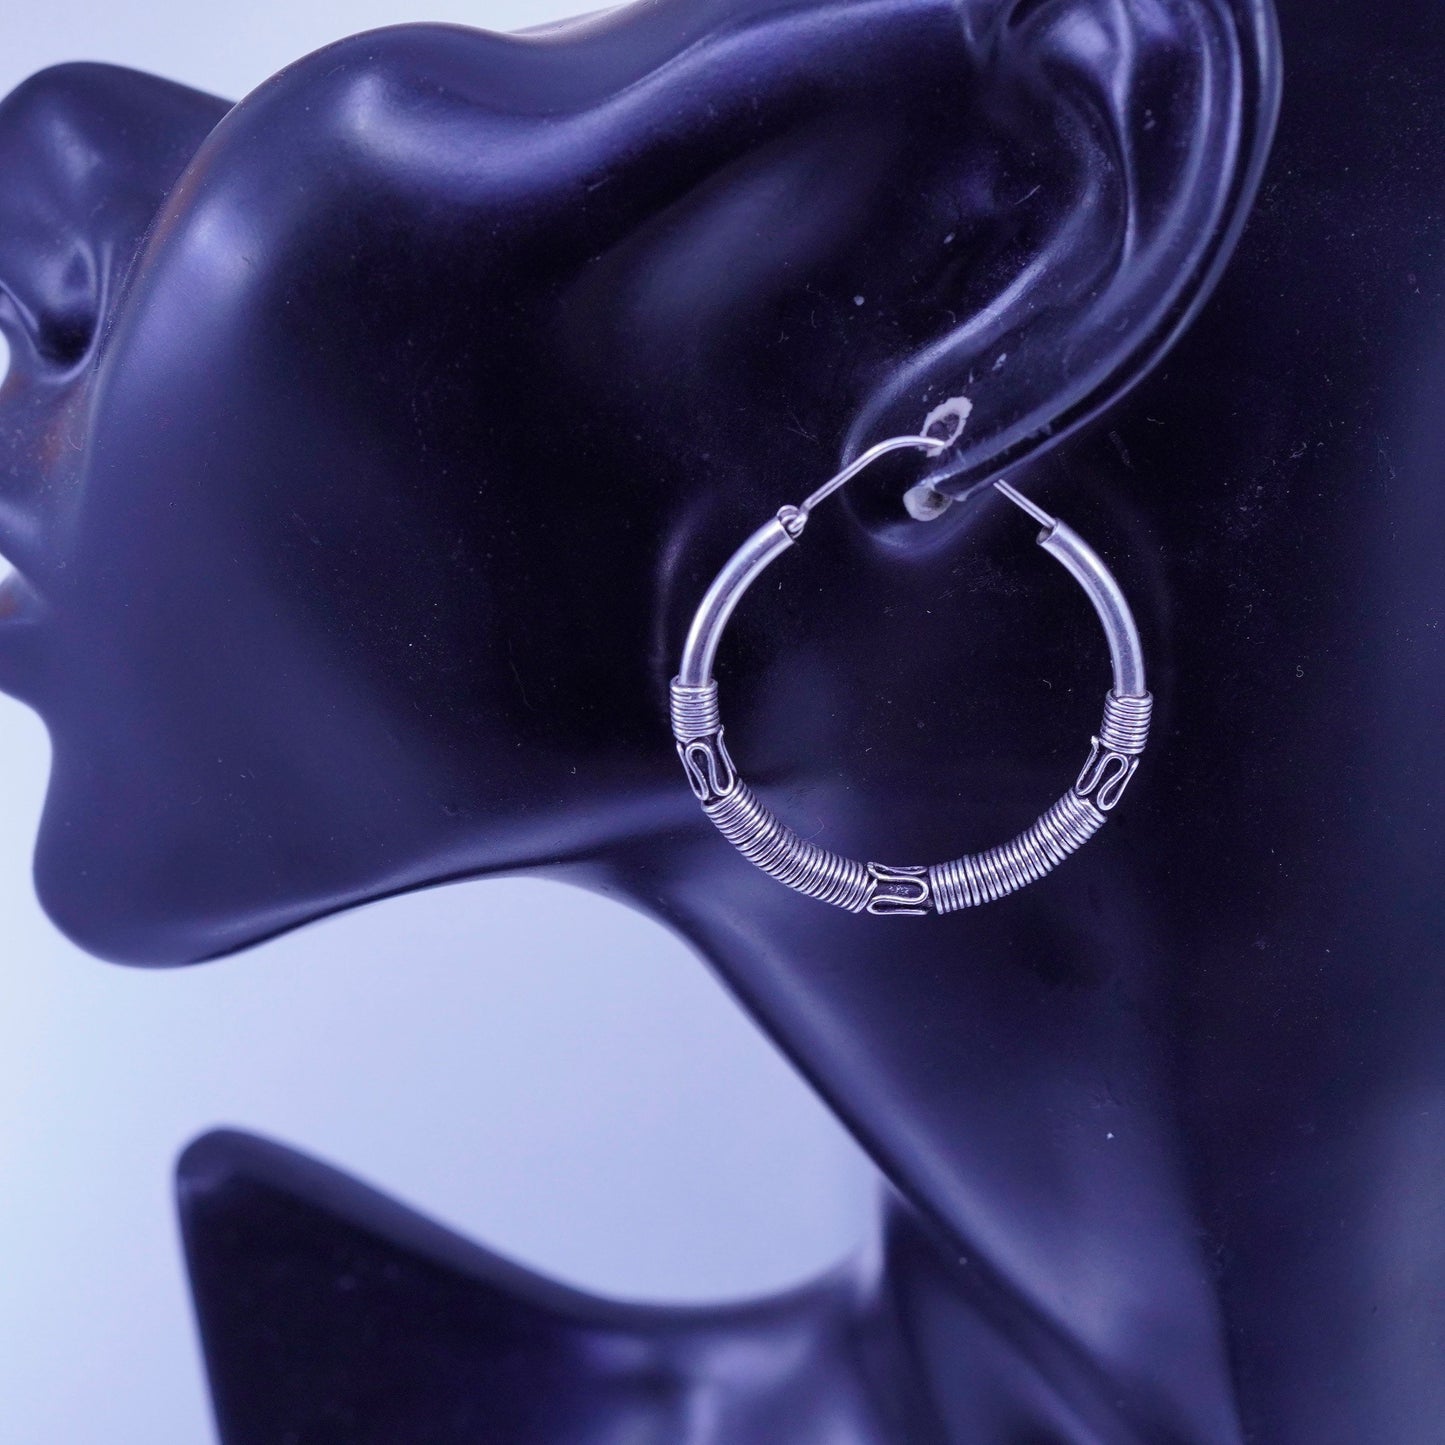 1.5”, vintage Sterling silver handmade earrings, wired 925 simple hoops